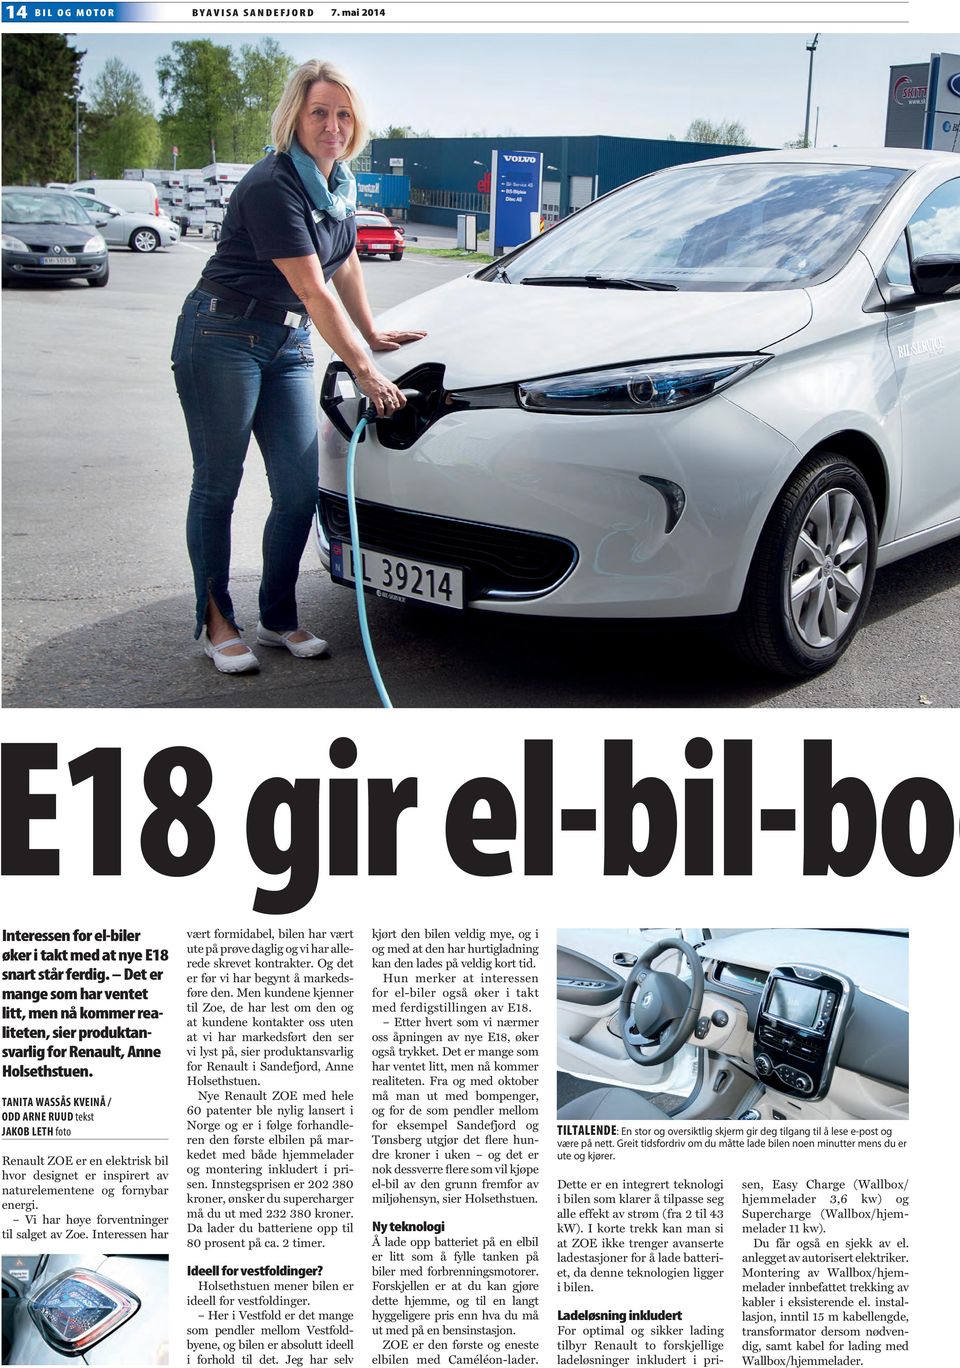 TANITA WASSÅS KVEINÅ / ODD ARNE RUUD tekst JAKOB LETH foto Renault ZOE er en elektrisk bil hvor designet er inspirert av naturelementene og fornybar energi.